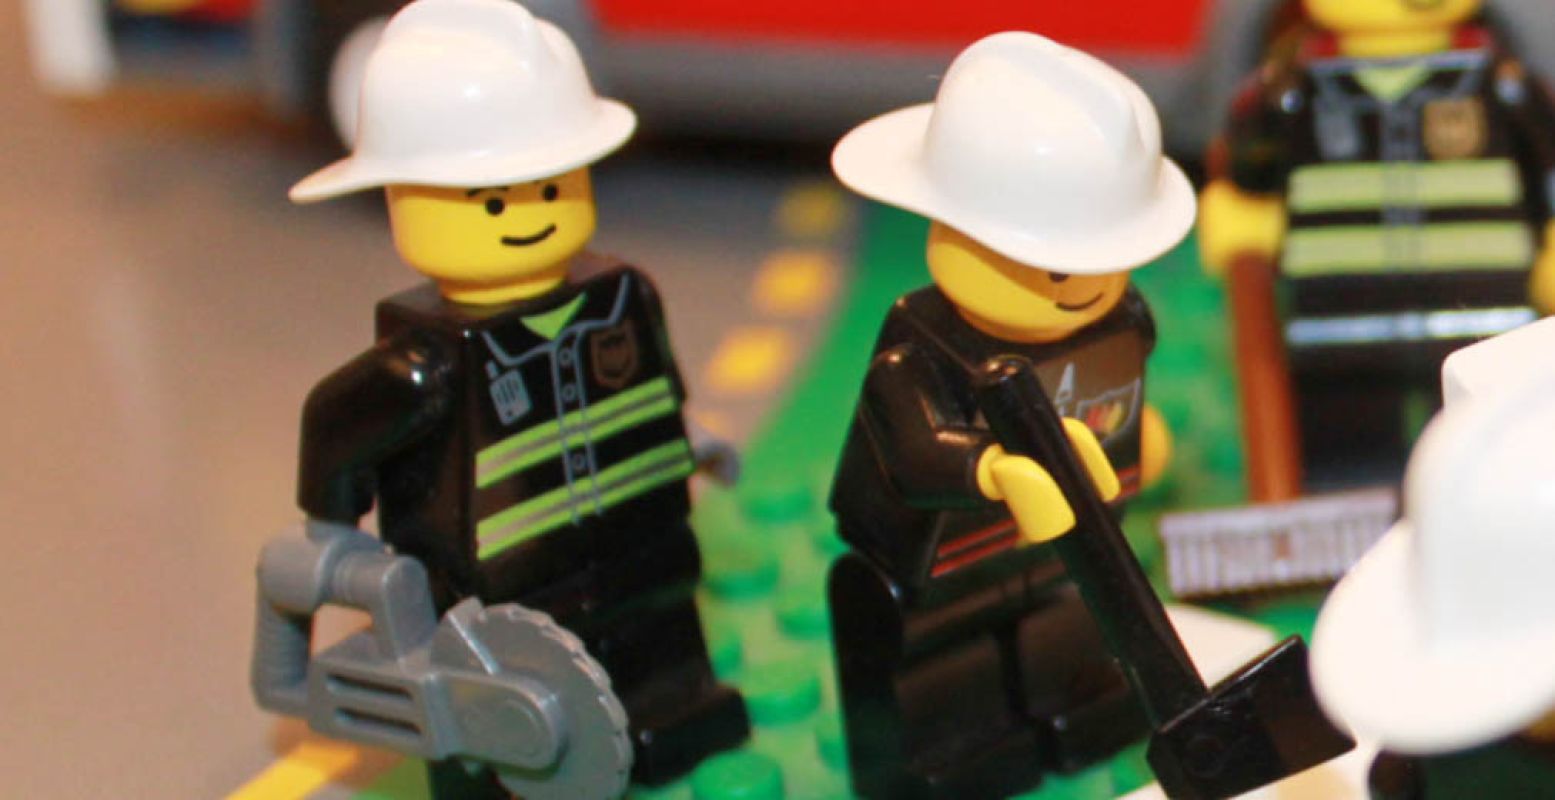 De brandweermannen zijn hard aan het werk in Brandweer LEGO City. Foto: Veiligheidsmuseum PIT.